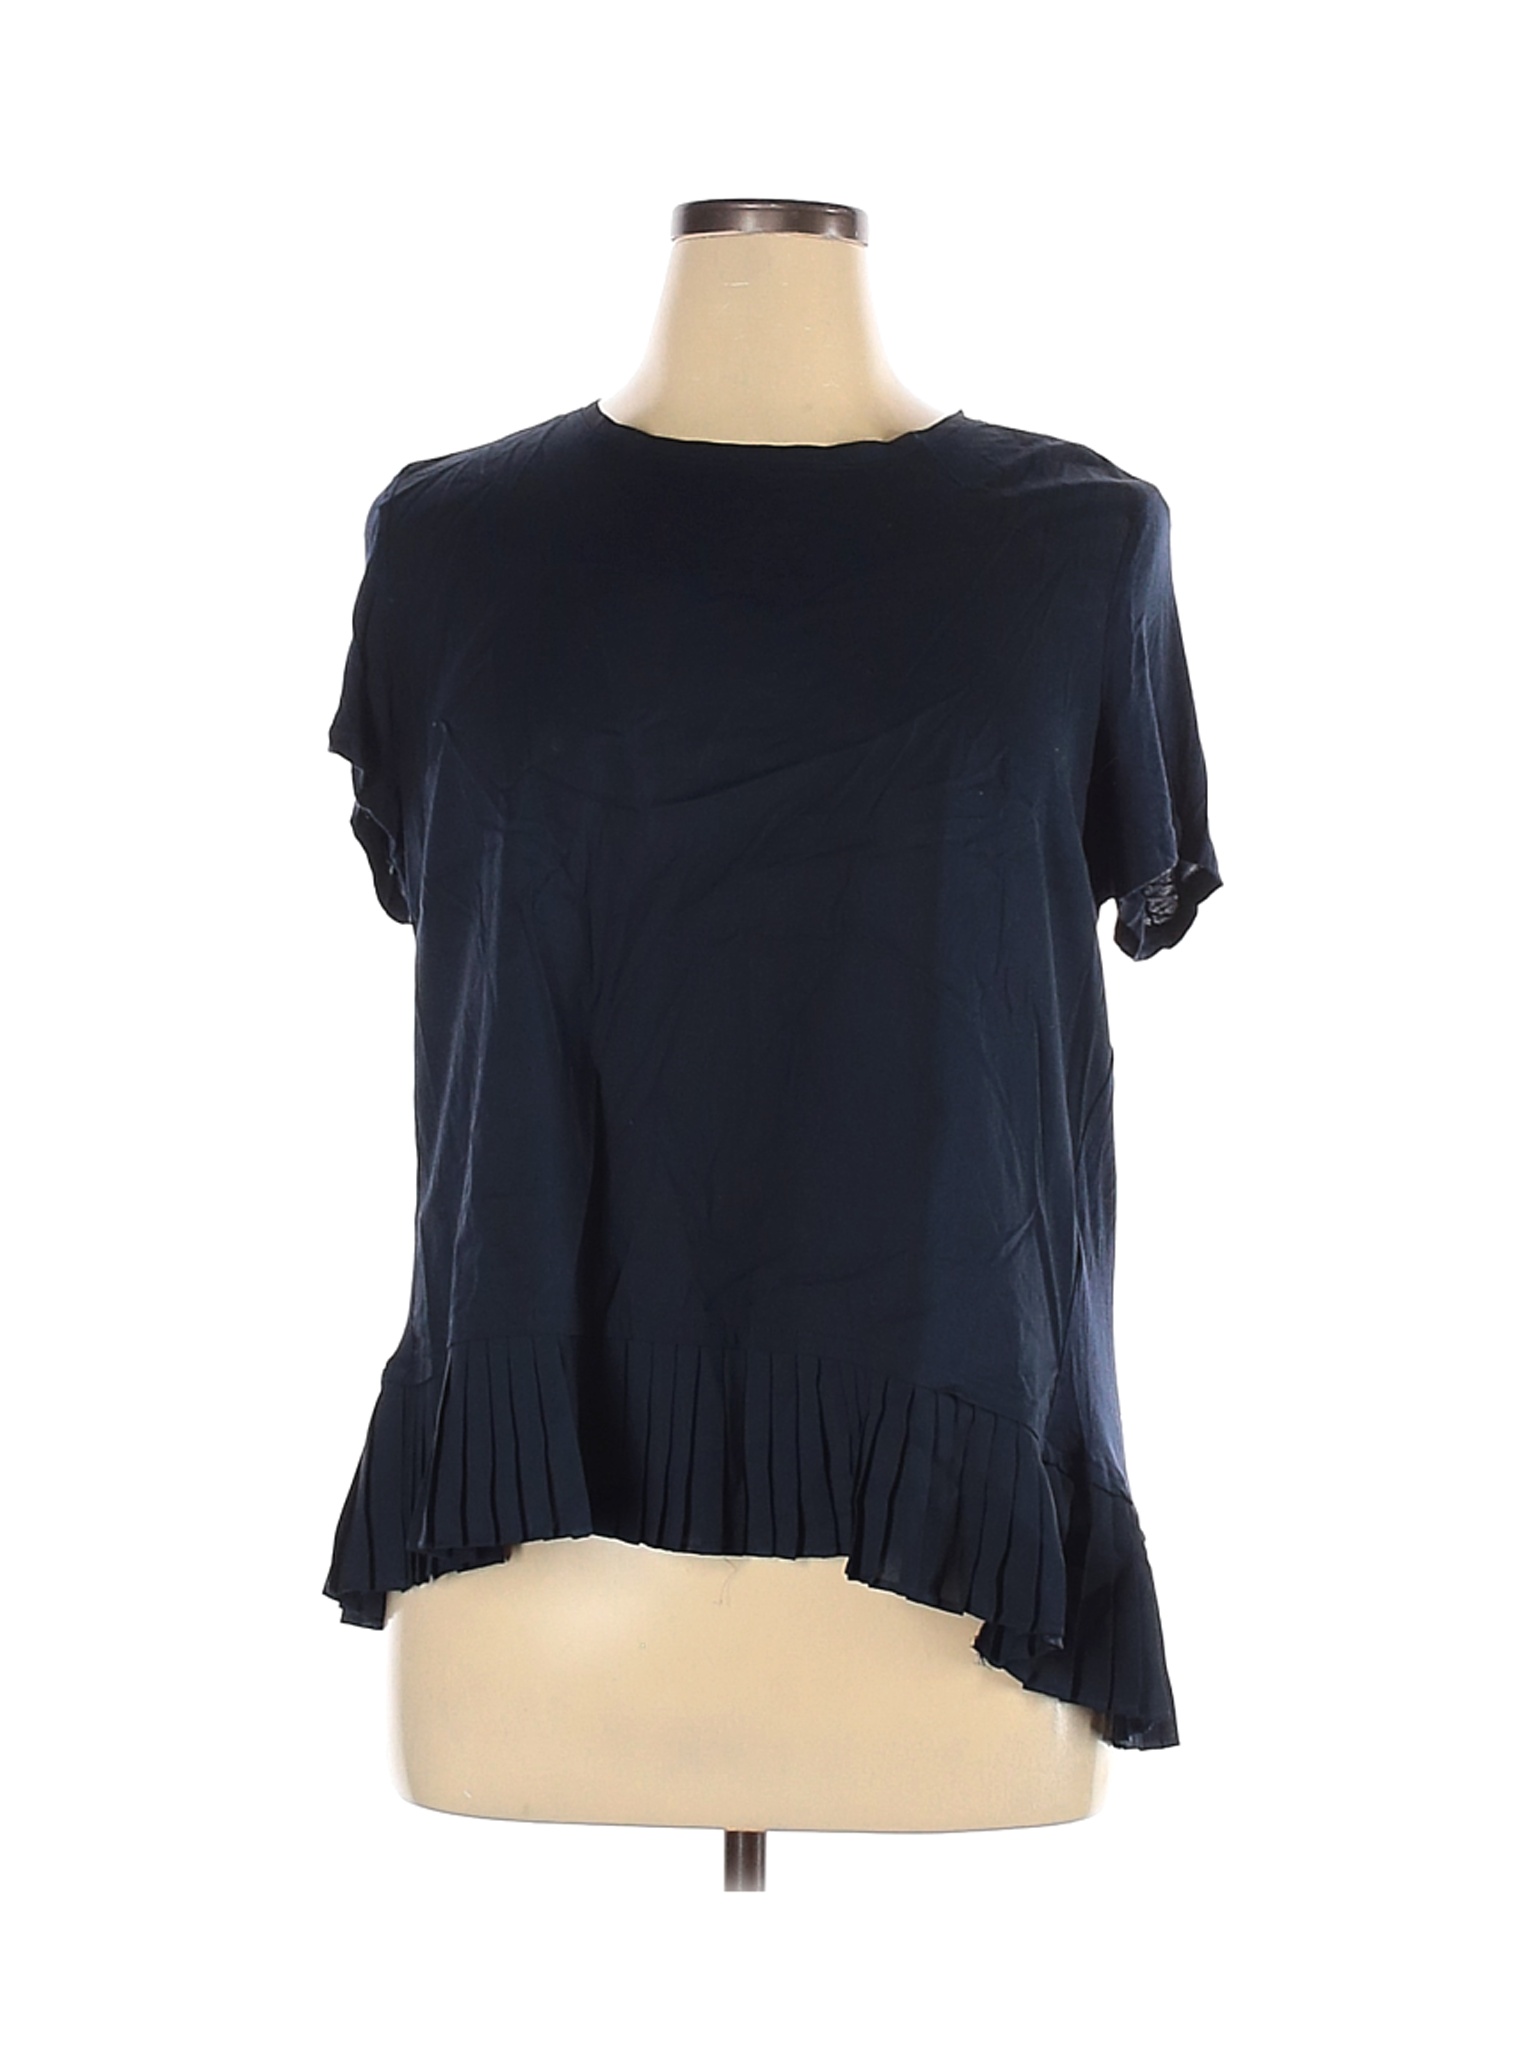 Simply Vera Vera Wang Women Blue Short Sleeve Blouse XL Petites | eBay